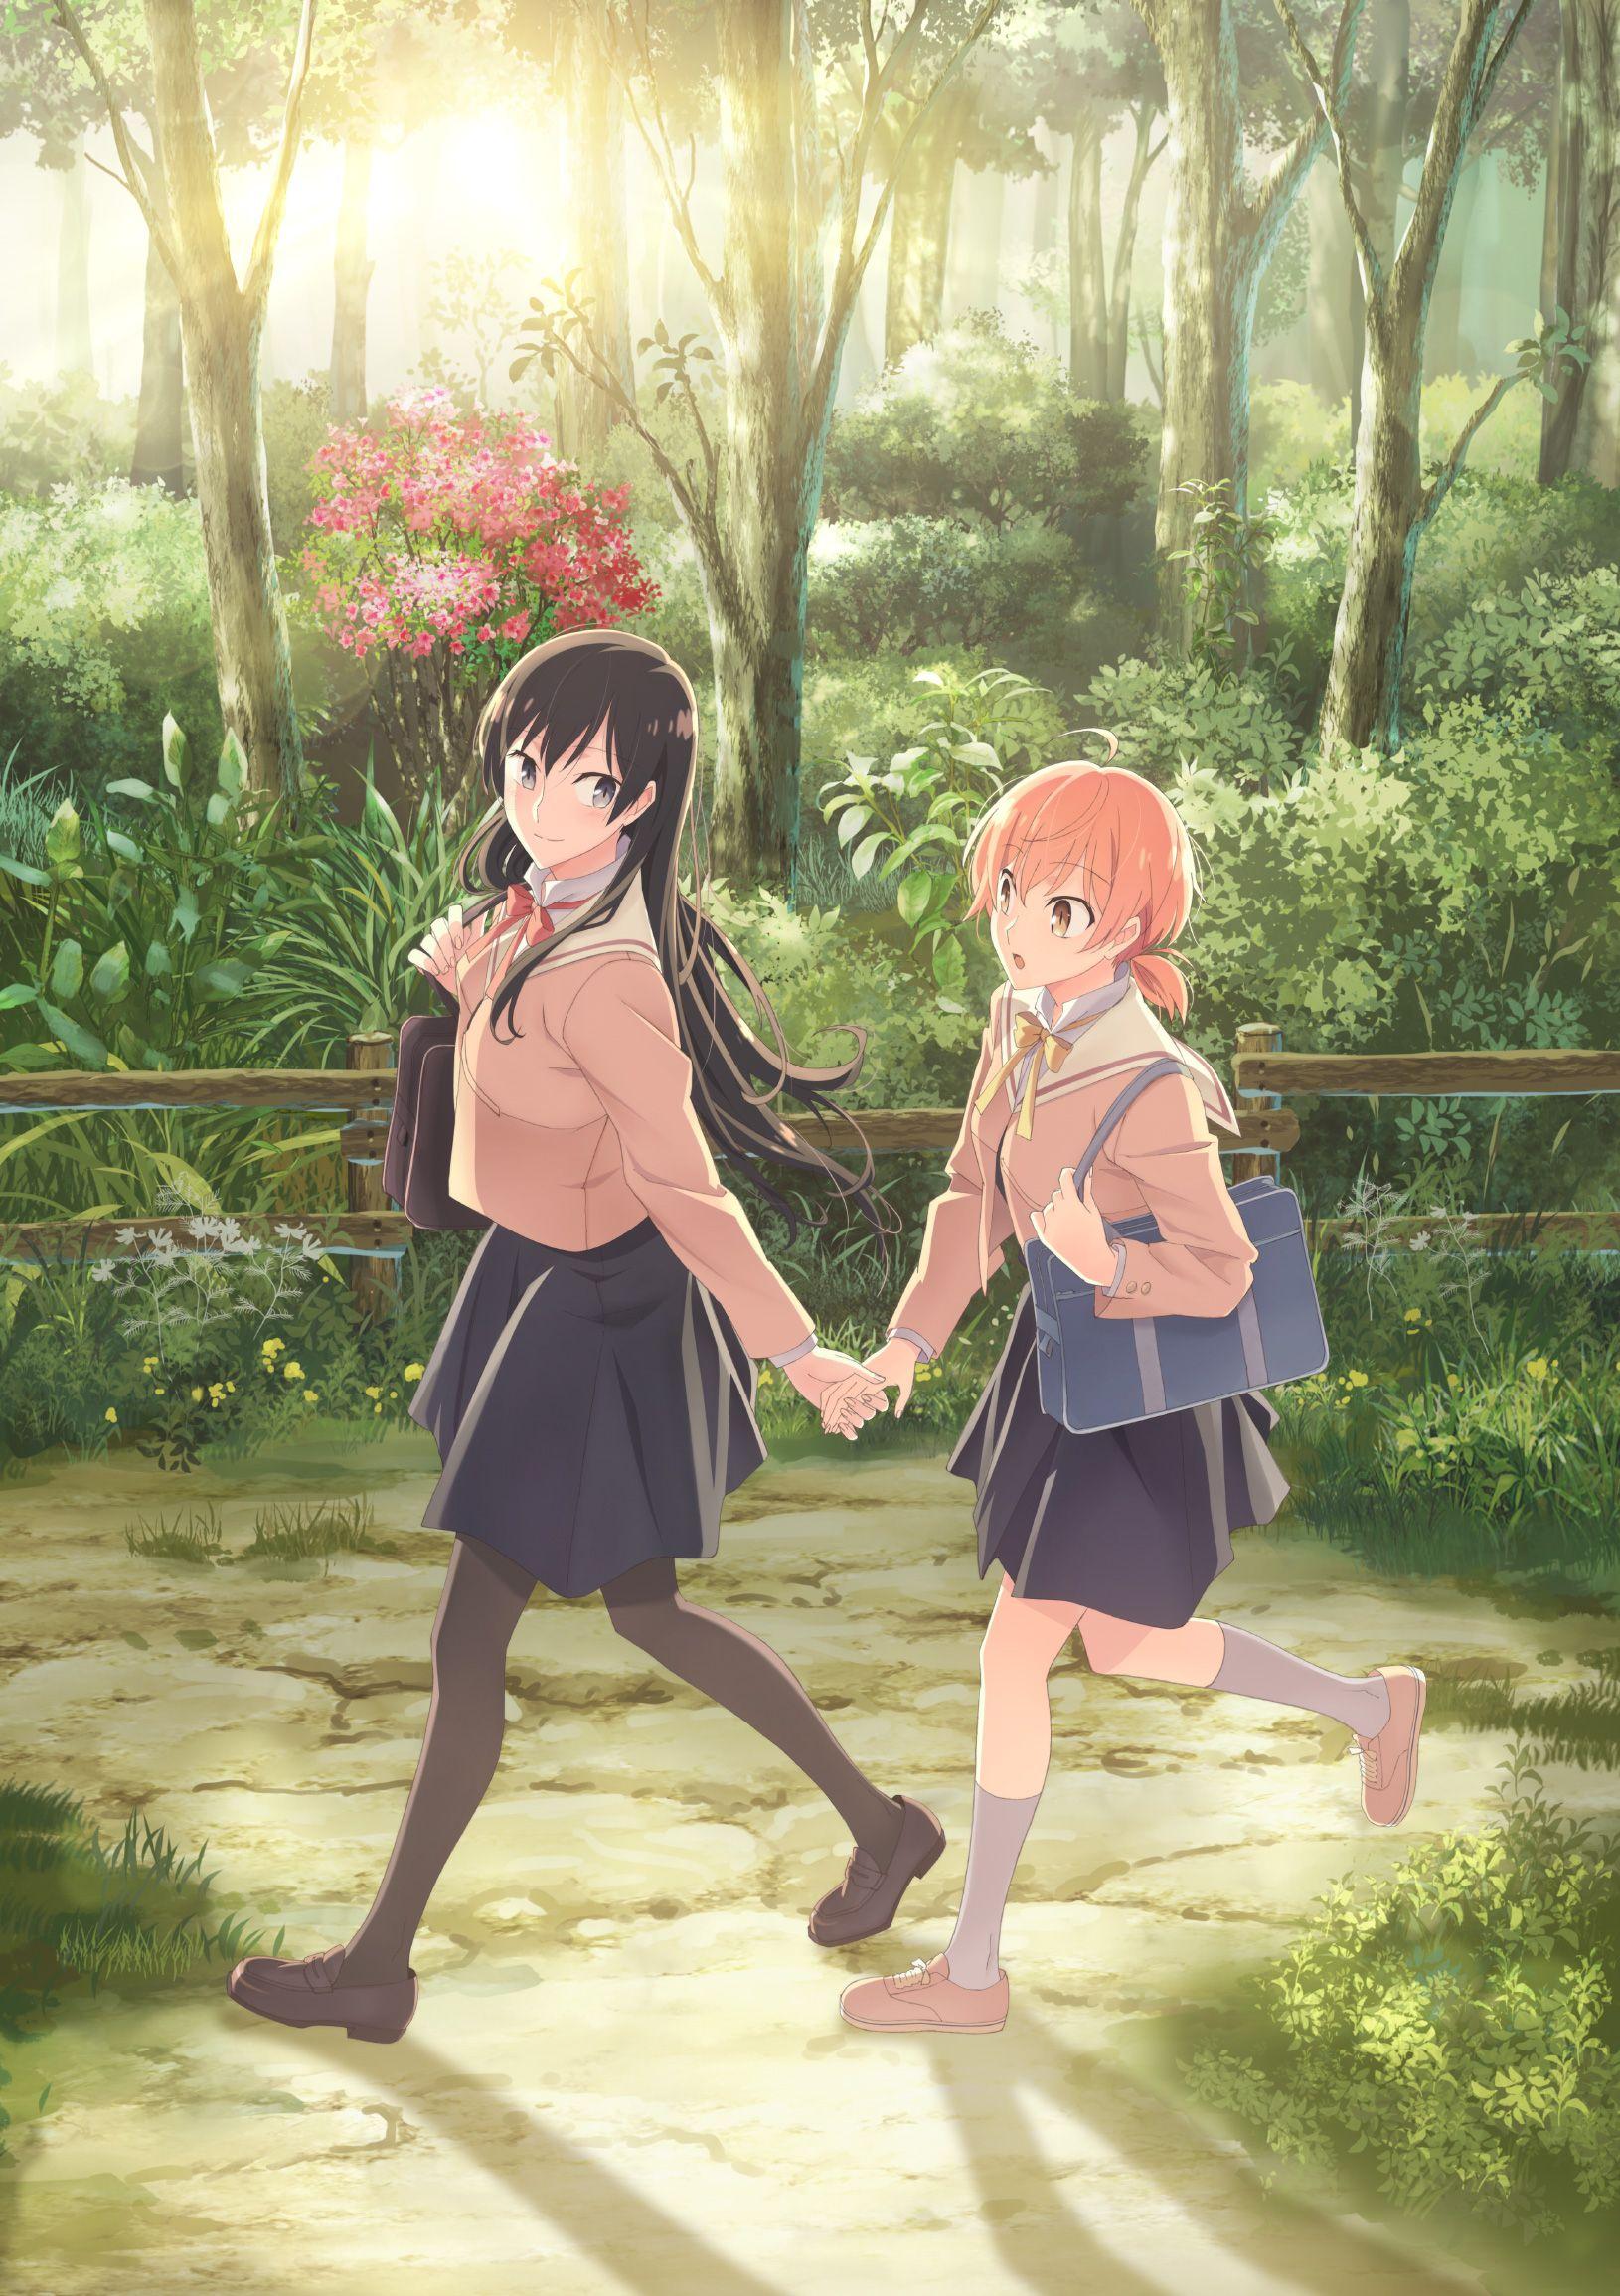 Yagate Kimi ni Naru (Bloom Into You) Anime Image Board